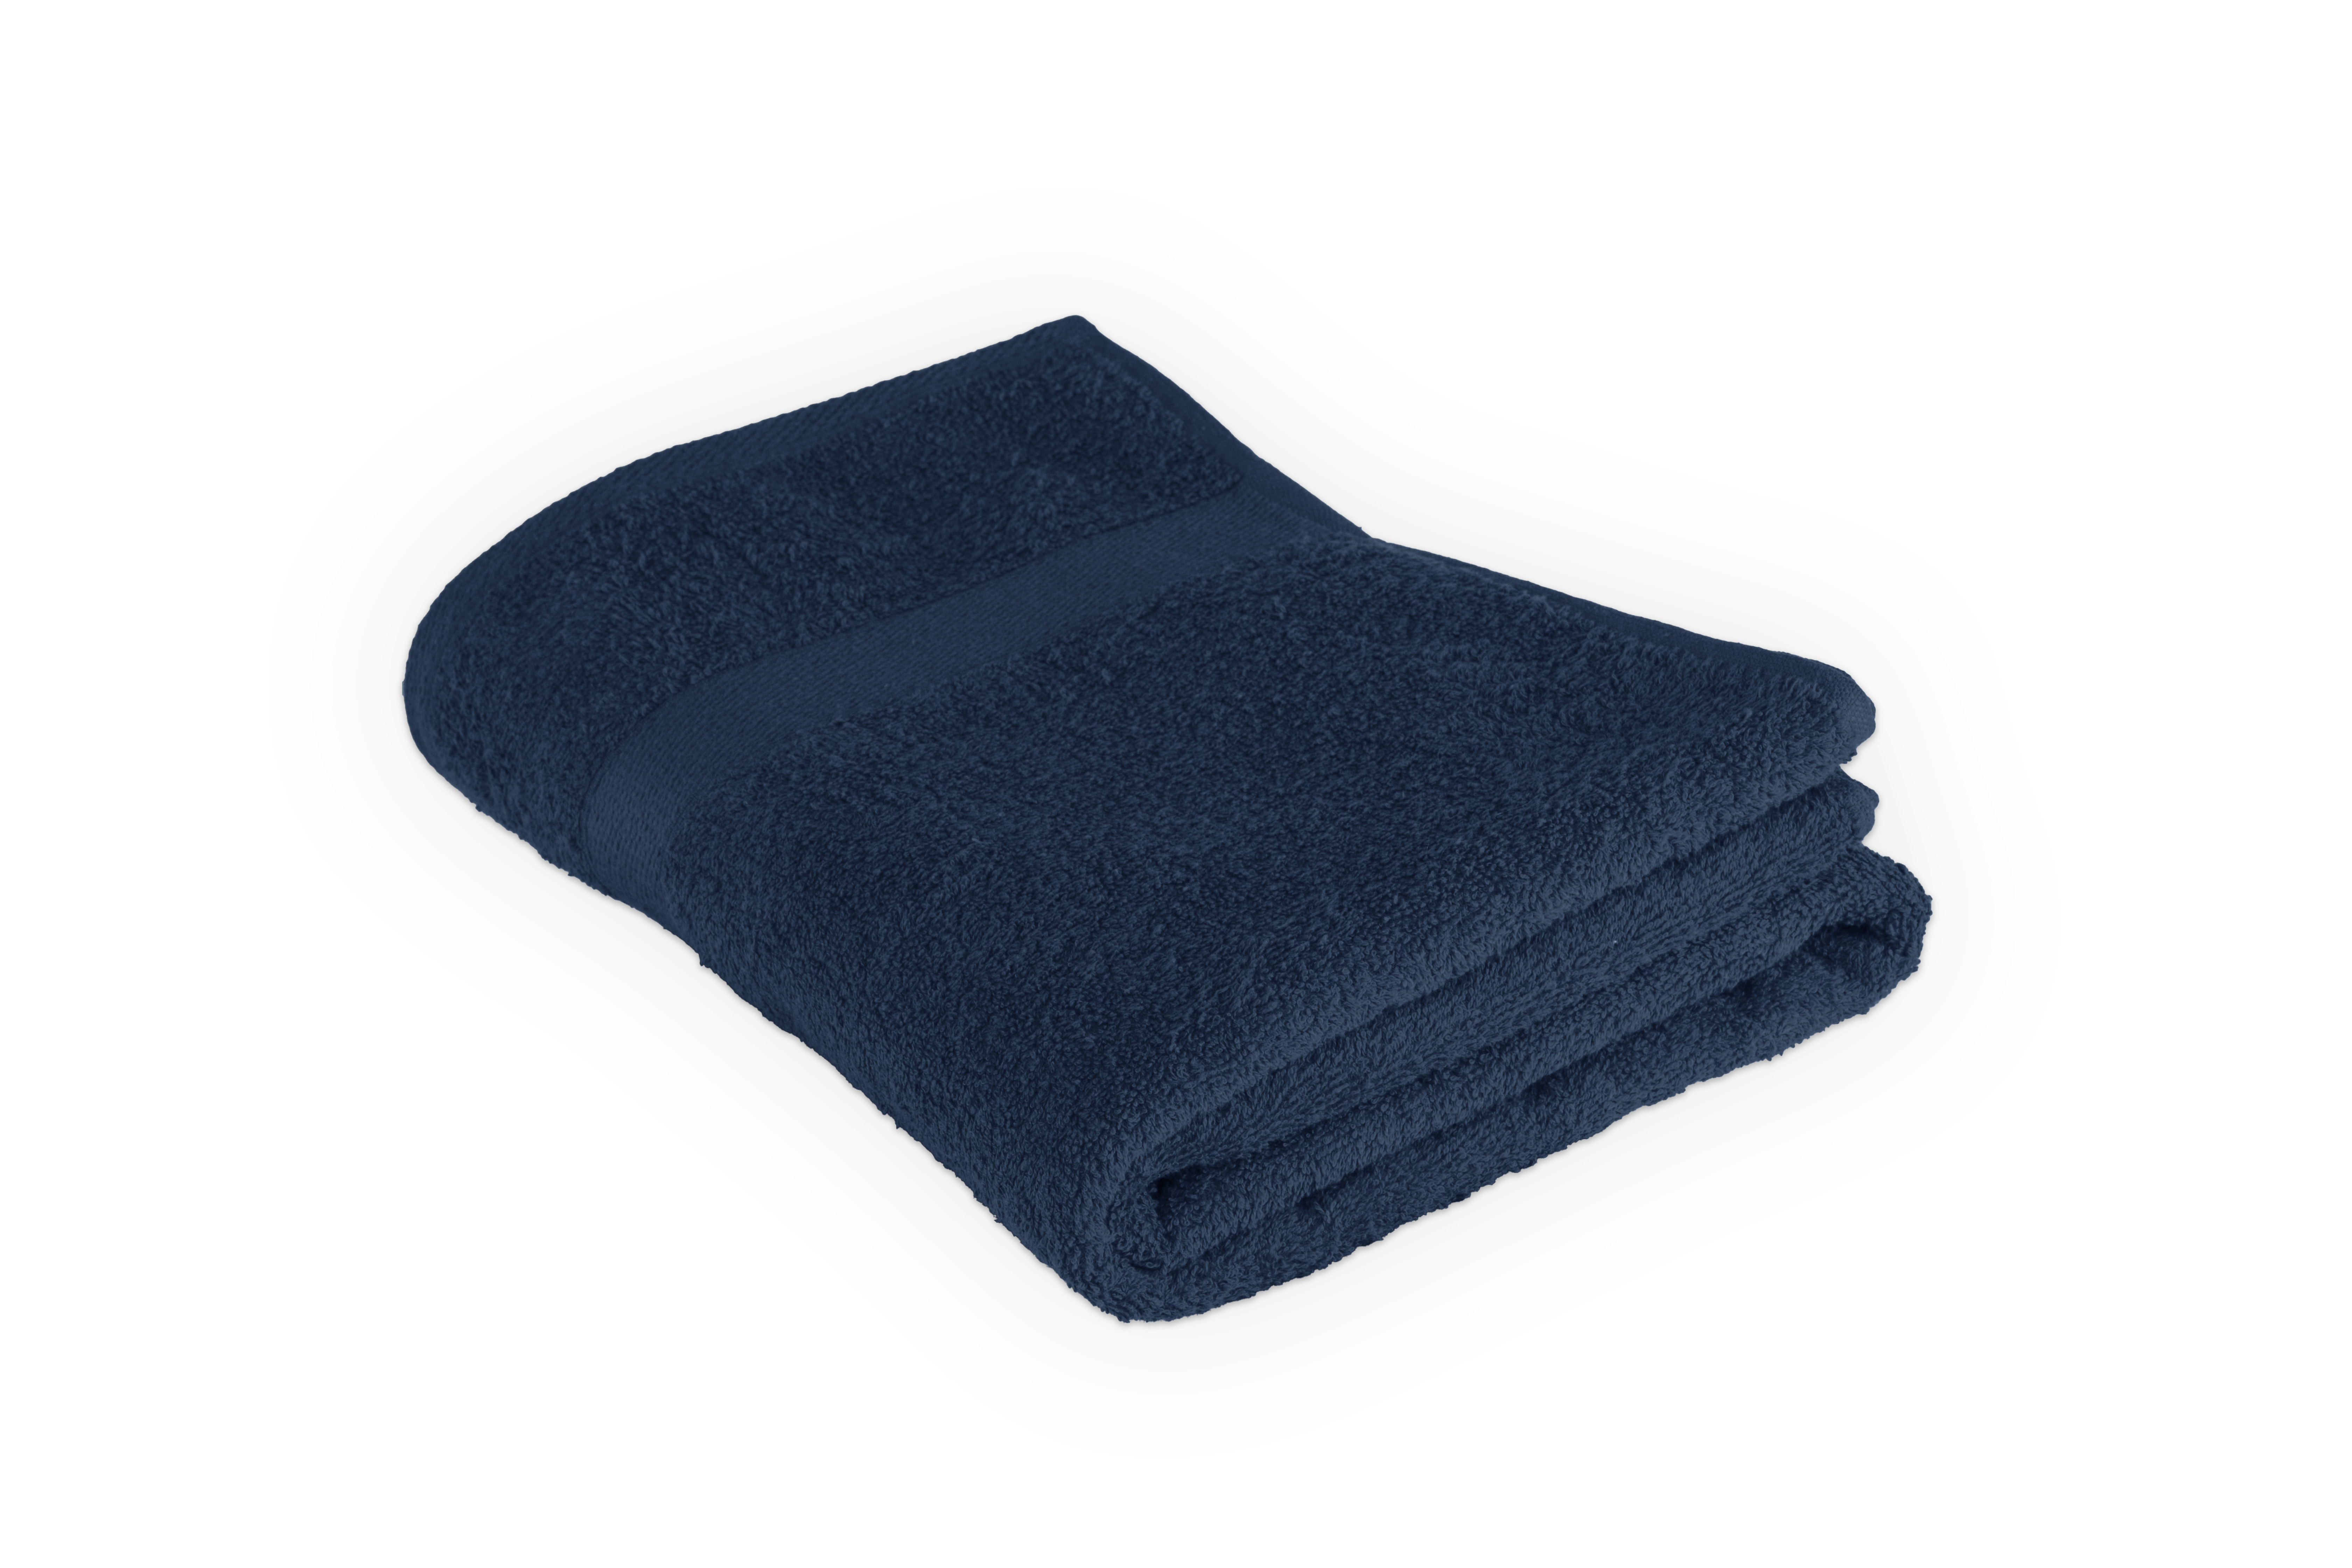 Shower towel 100x150cm, insigna blue